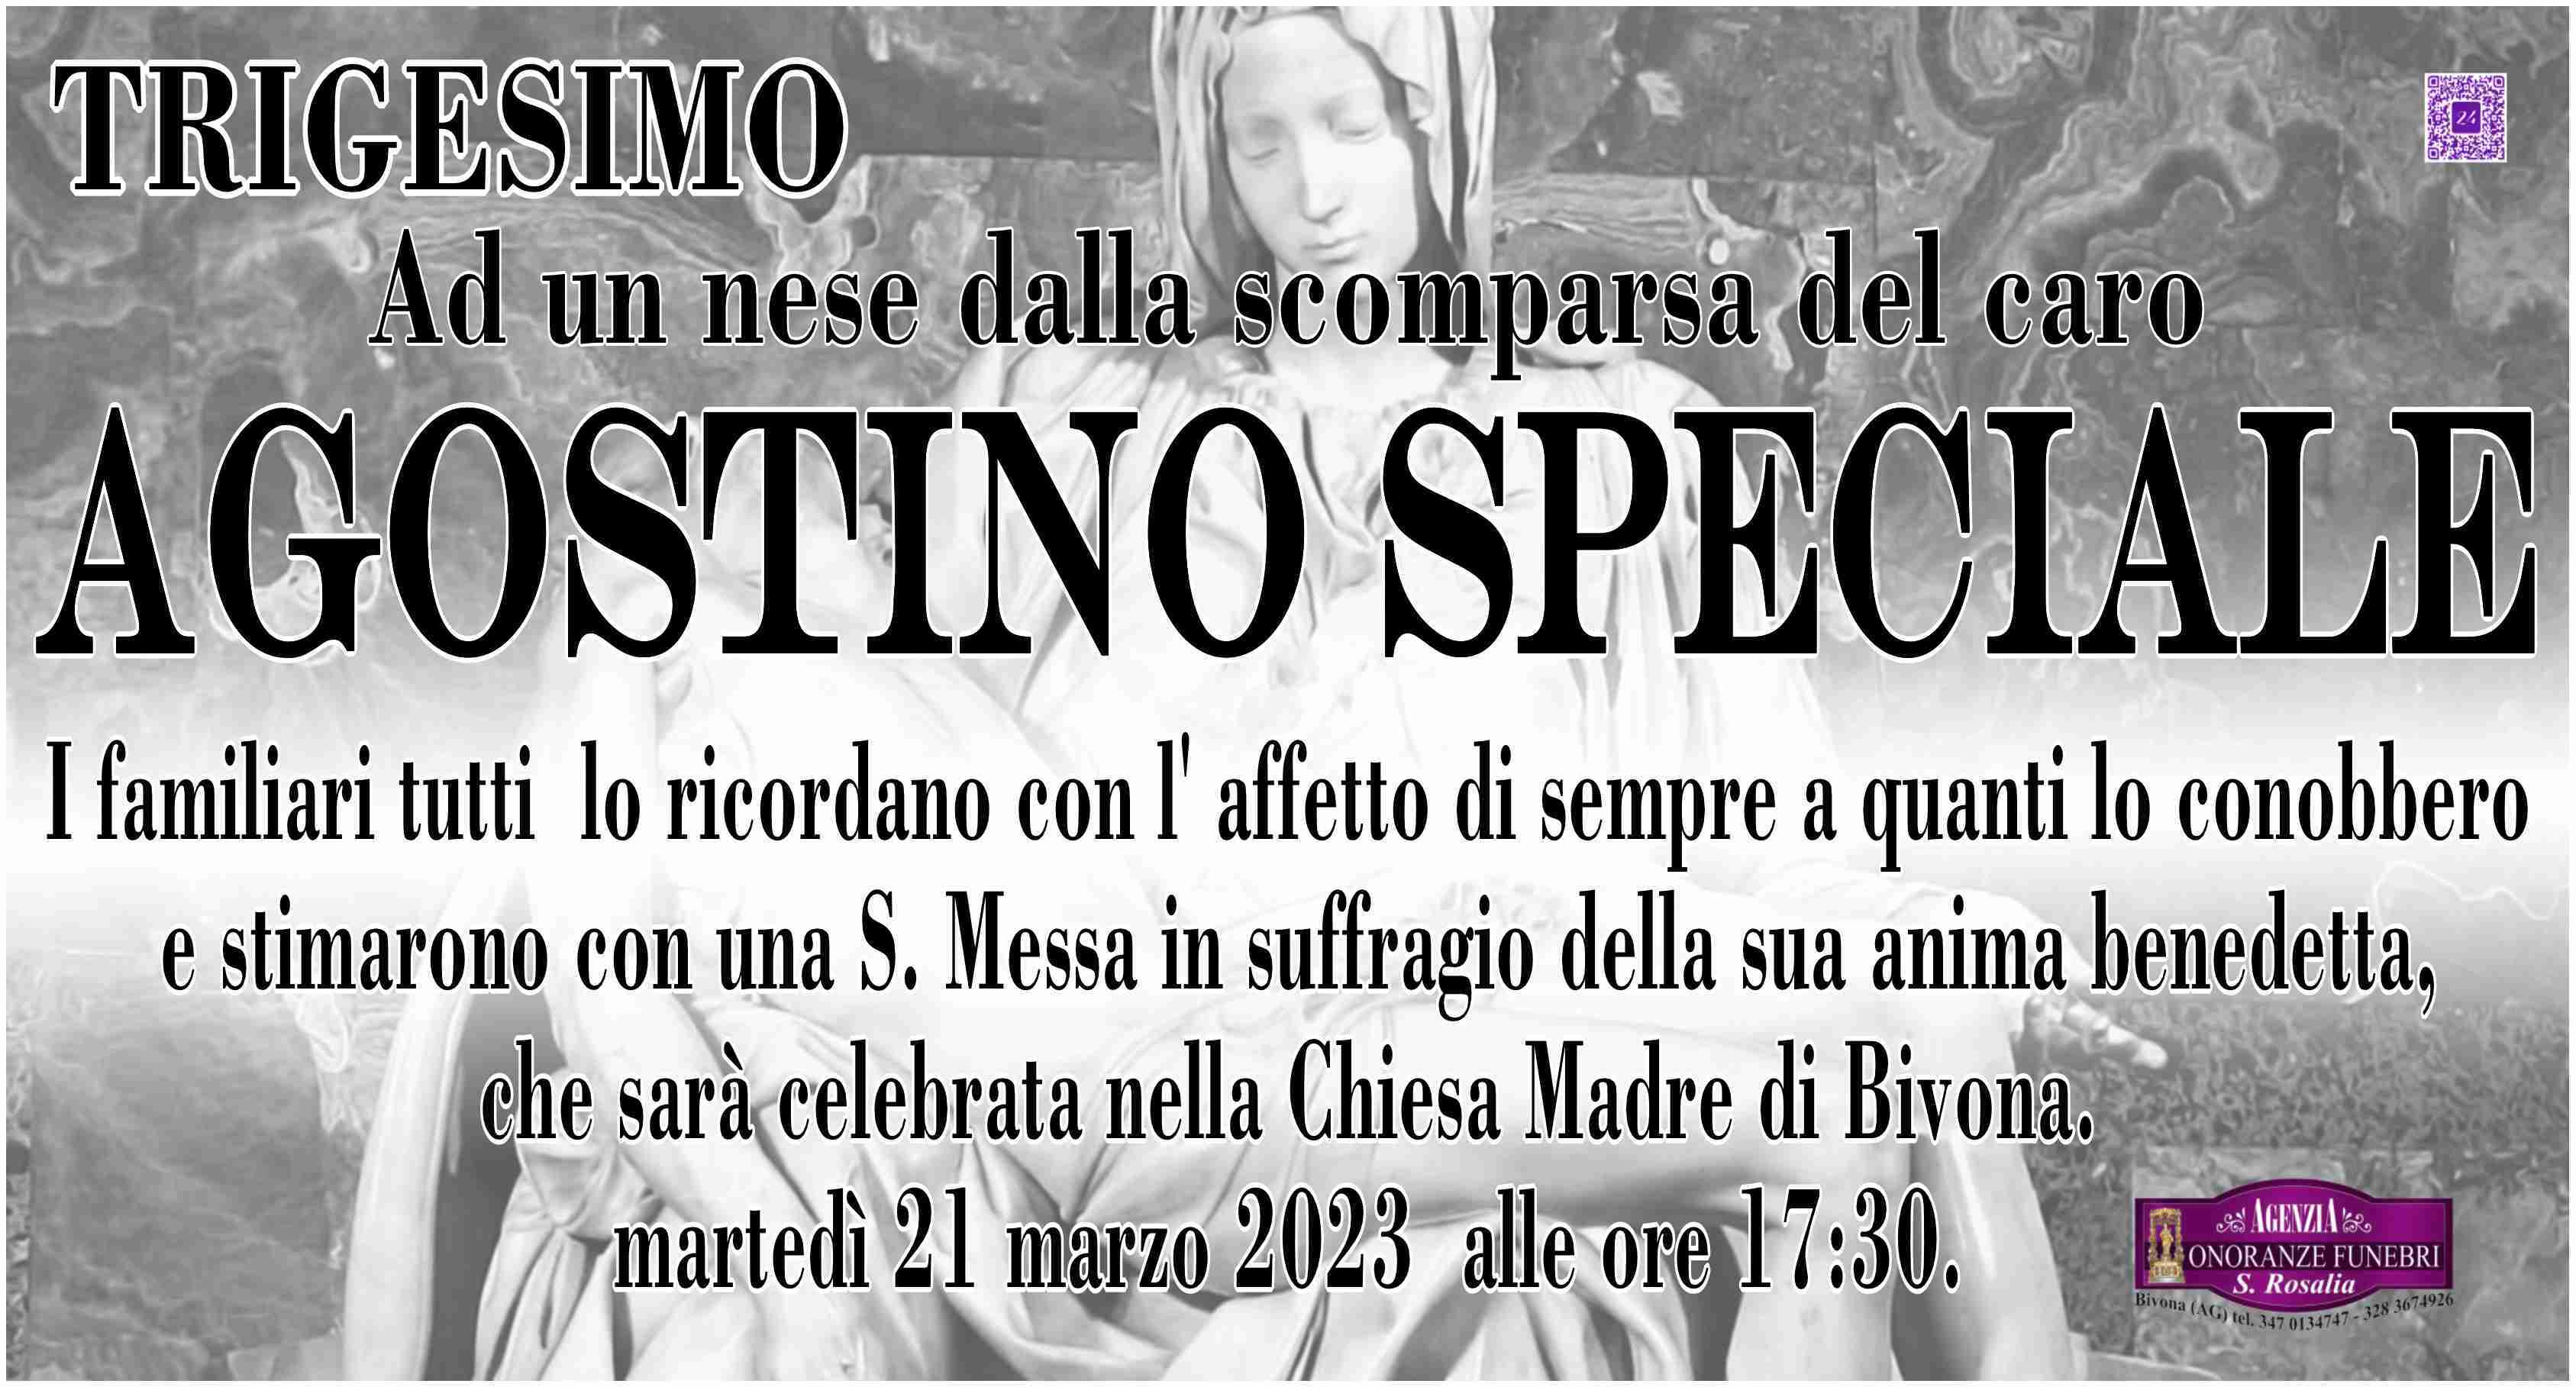 Agostino Speciale